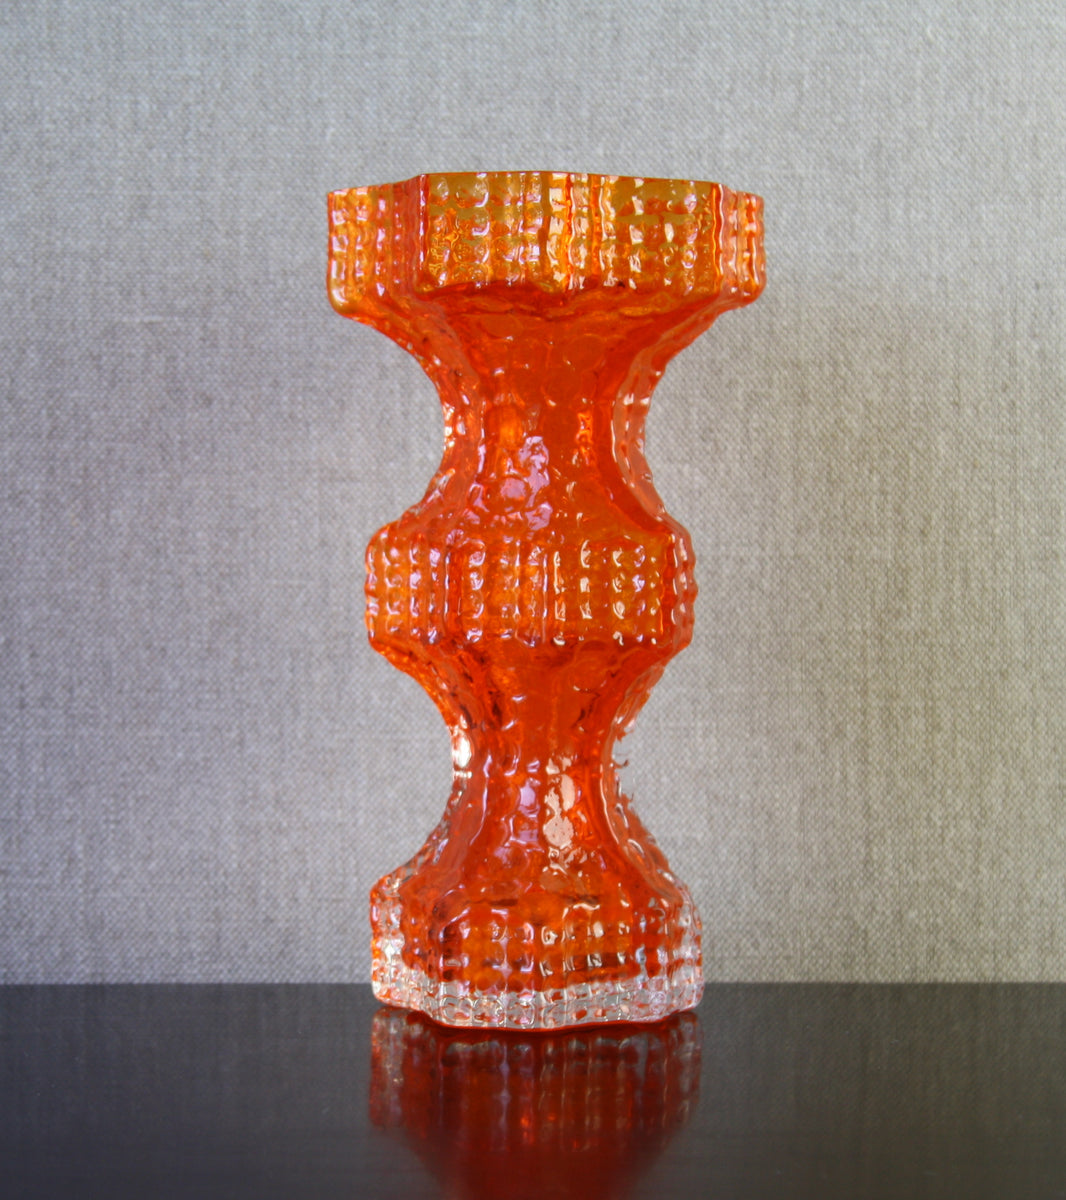 Orange Model 1419 "Fenomena" Vase by Nanny Still, 1967